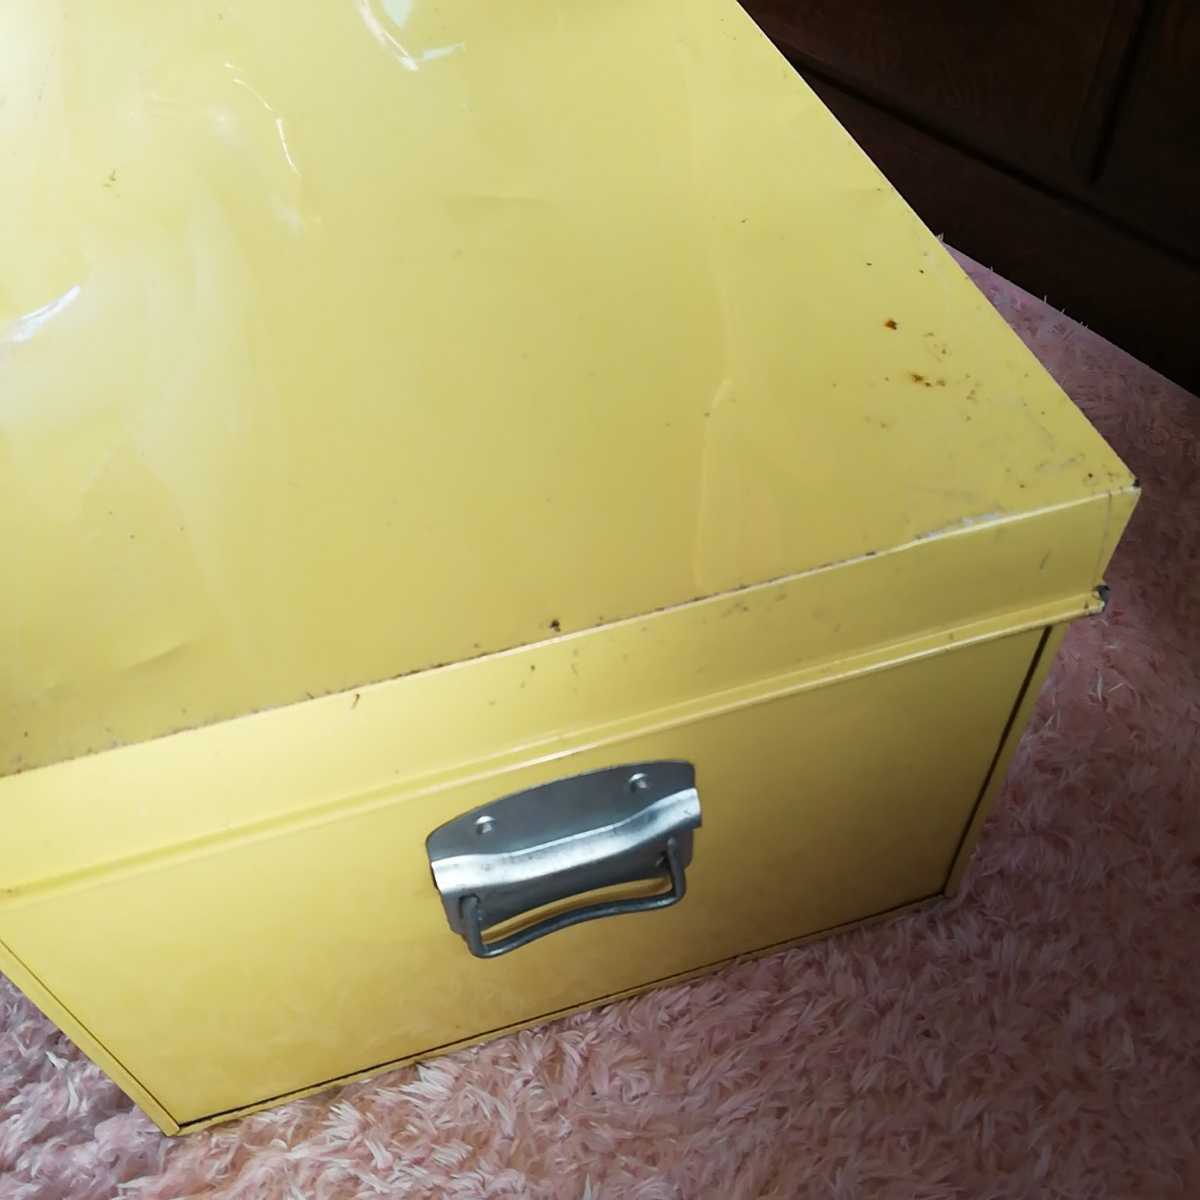  Showa Retro жестяная пластина жестяная банка ящик для одежды кошка собака животное место хранения коробка сохранение жестяная банка античный текущее состояние с дефектом 